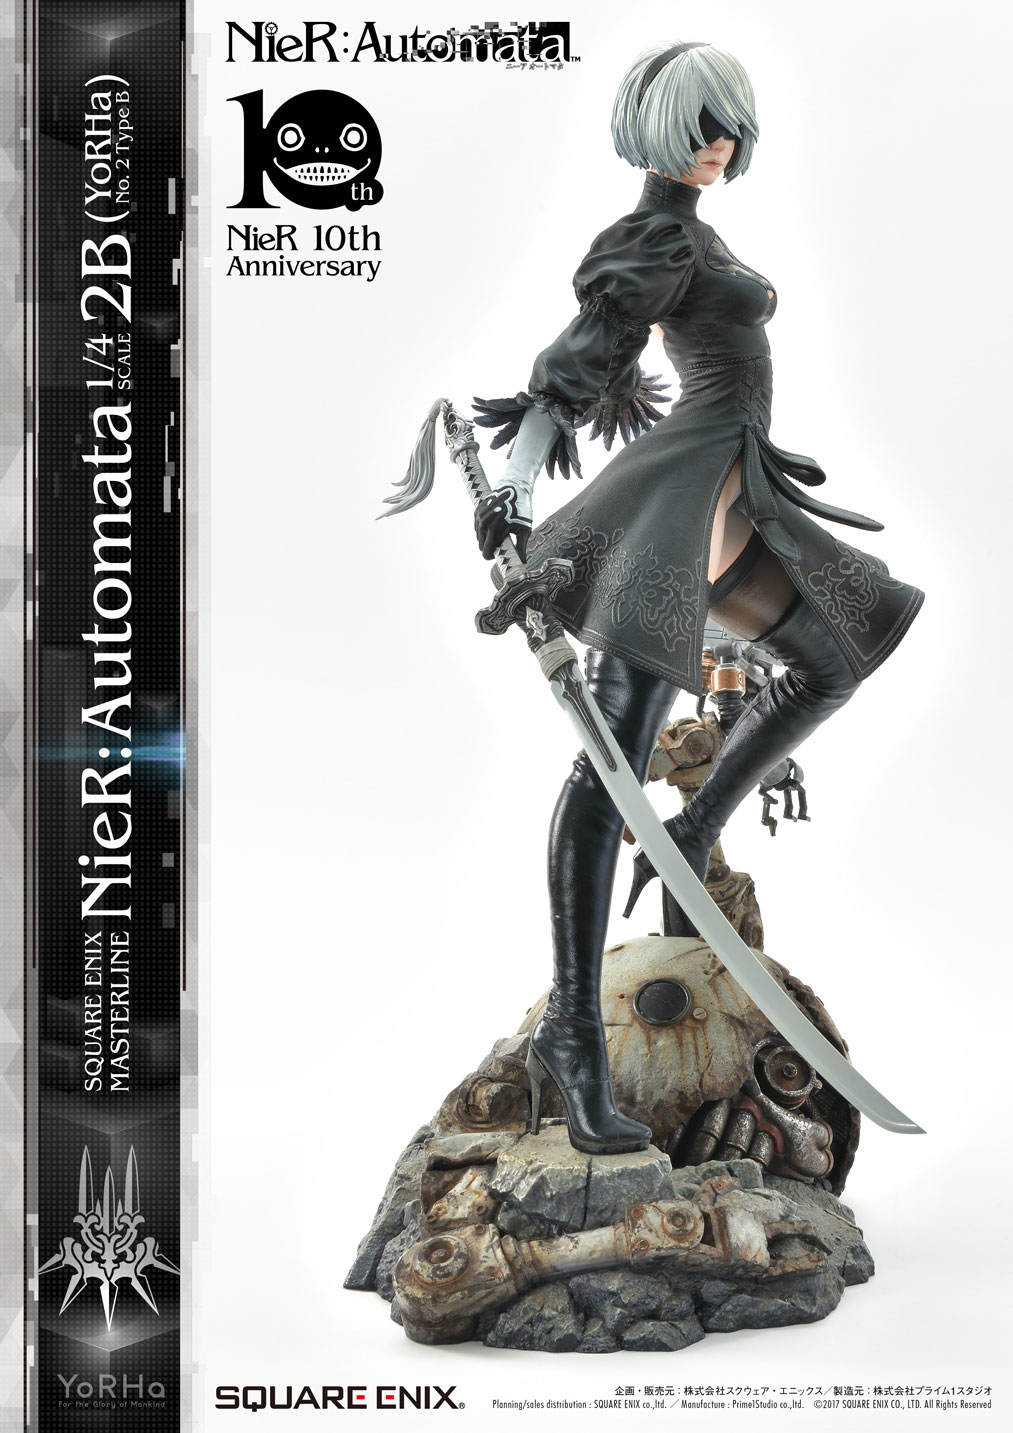 Prime 1 Studio Square Enix NieR:Automata YoRHa No. 2 Type B 1/4 Scale  Statue NEW